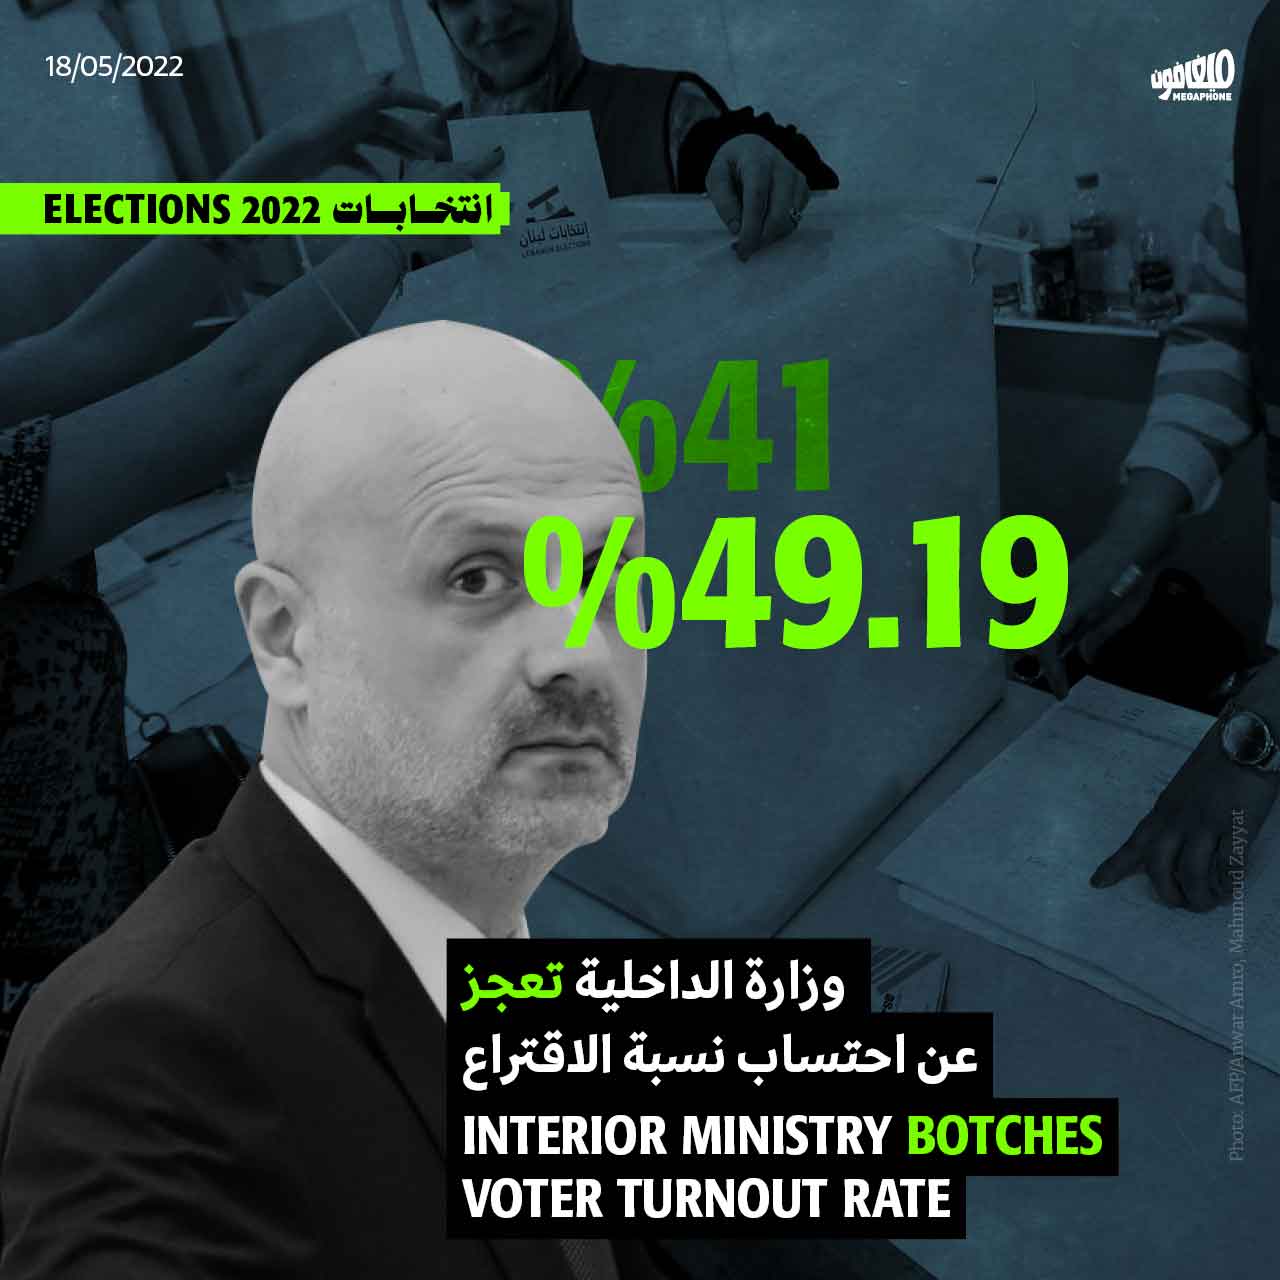 وزارة الداخلية تعجز عن احتساب نسبة الاقتراع